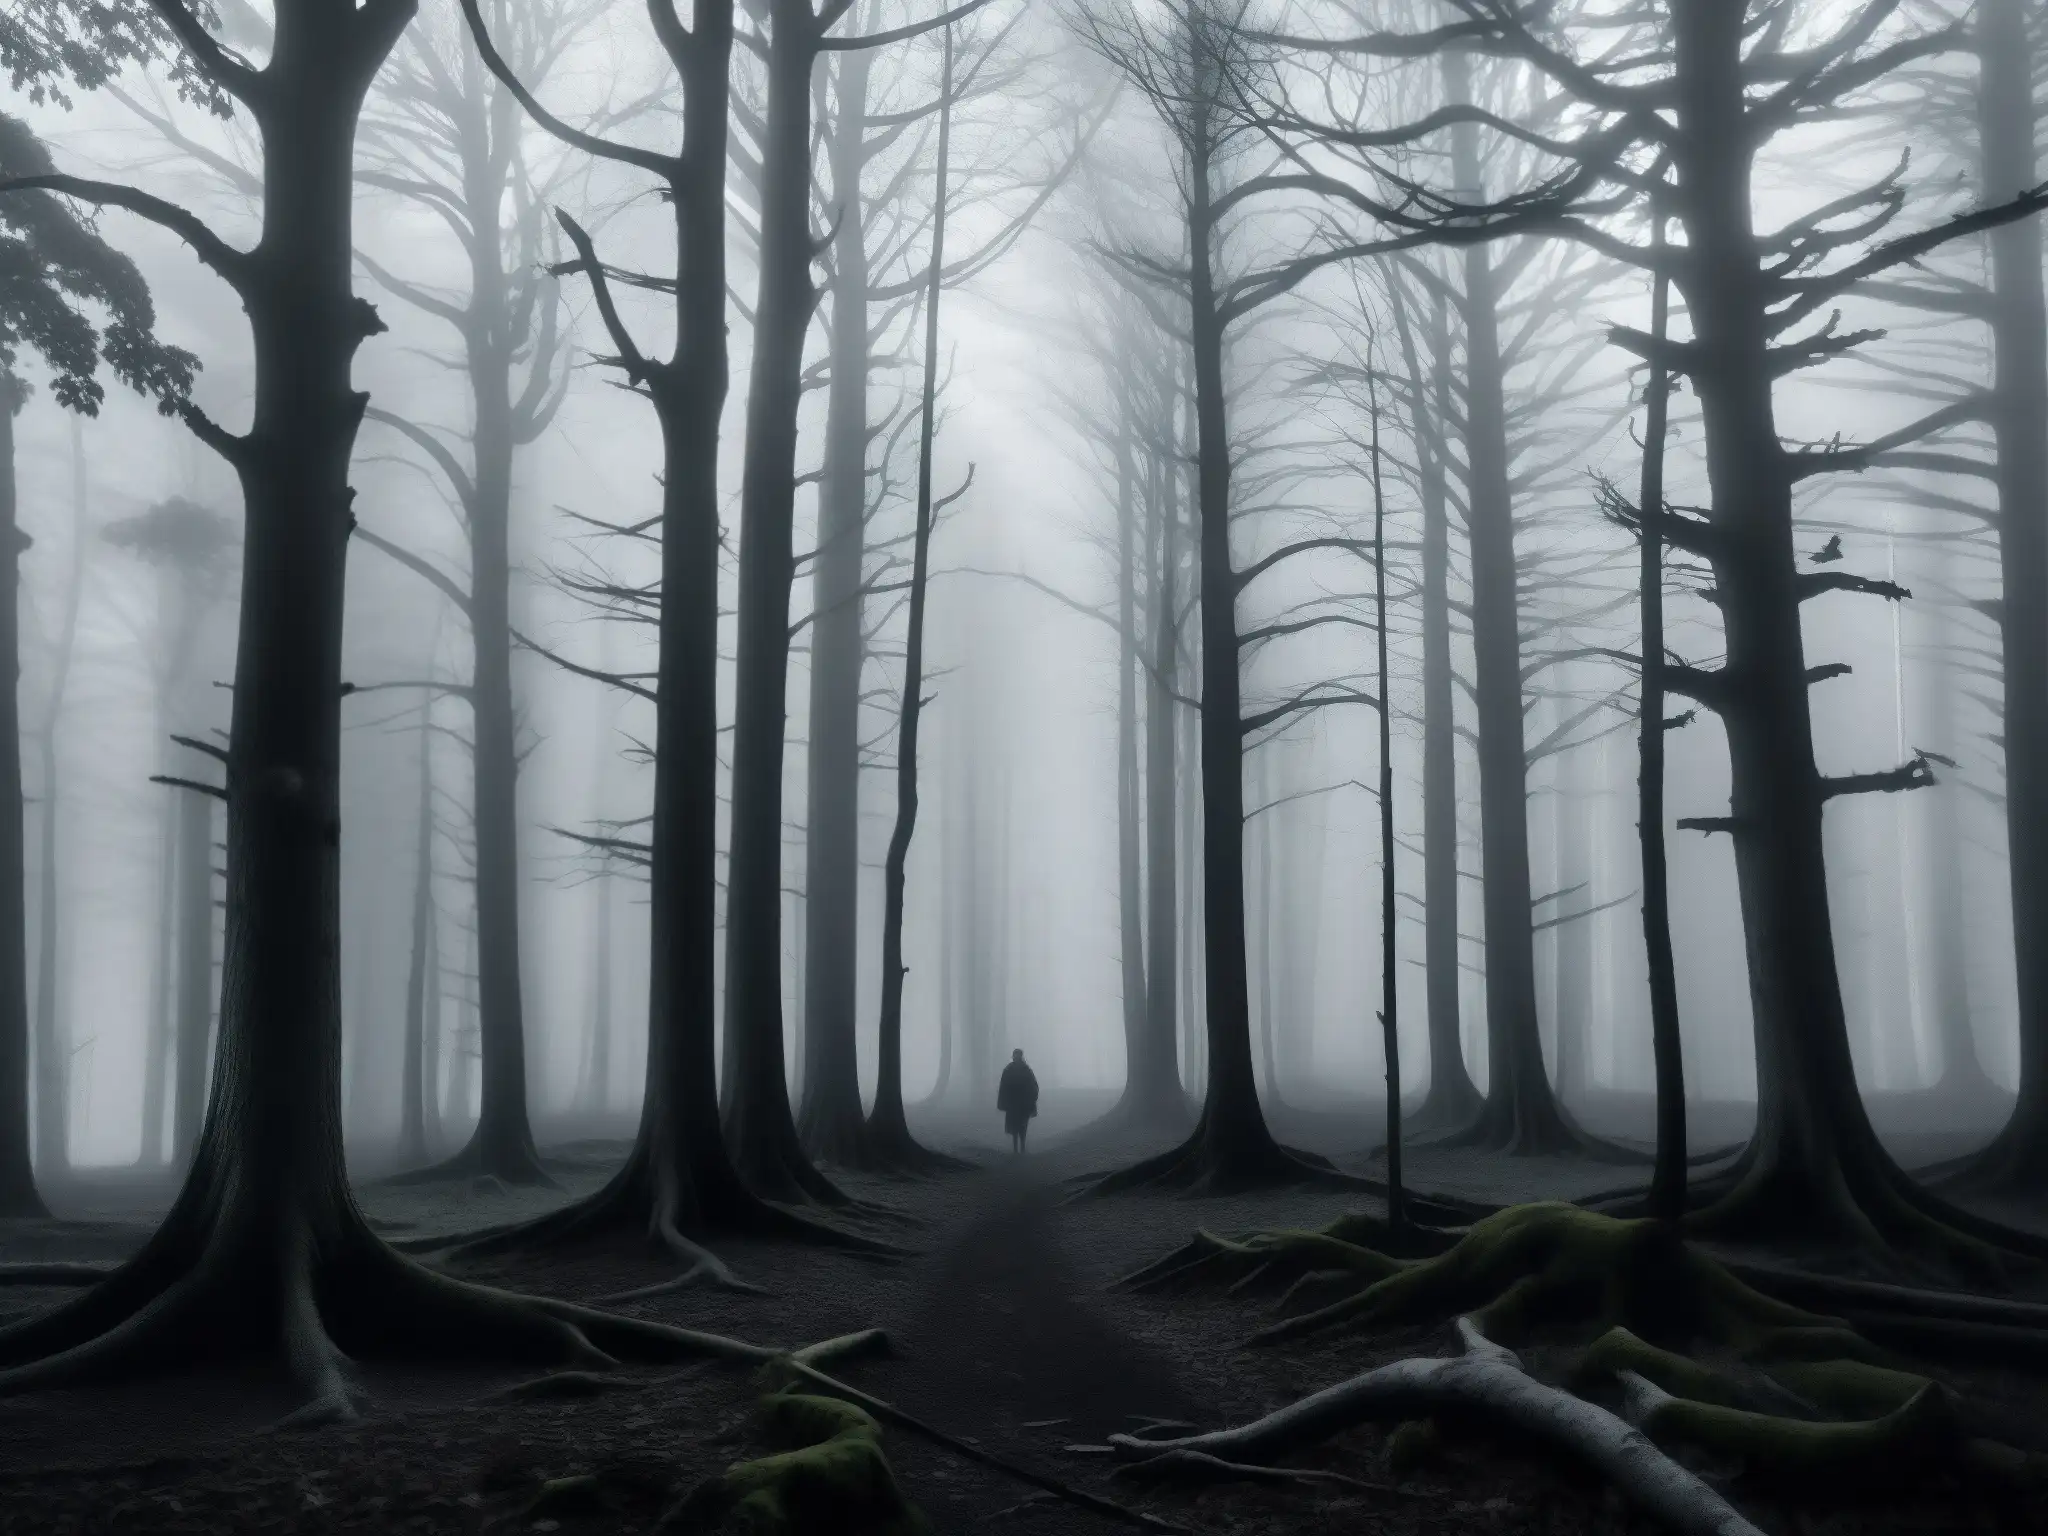 Imagen en blanco y negro de un bosque denso en la noche, con árboles retorcidos y una densa niebla